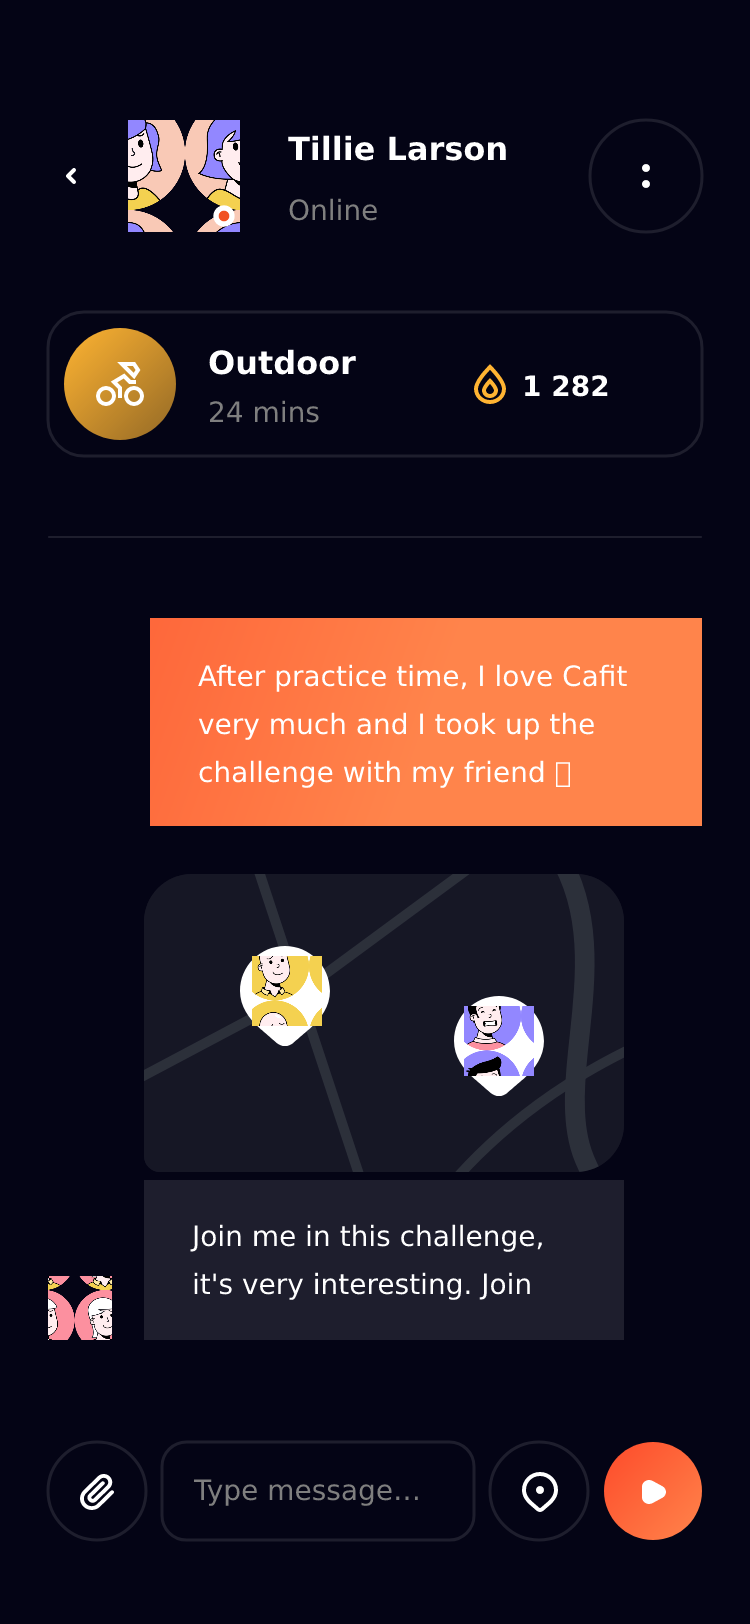 CaFit运动健身锻炼应用App Ui界面插图8